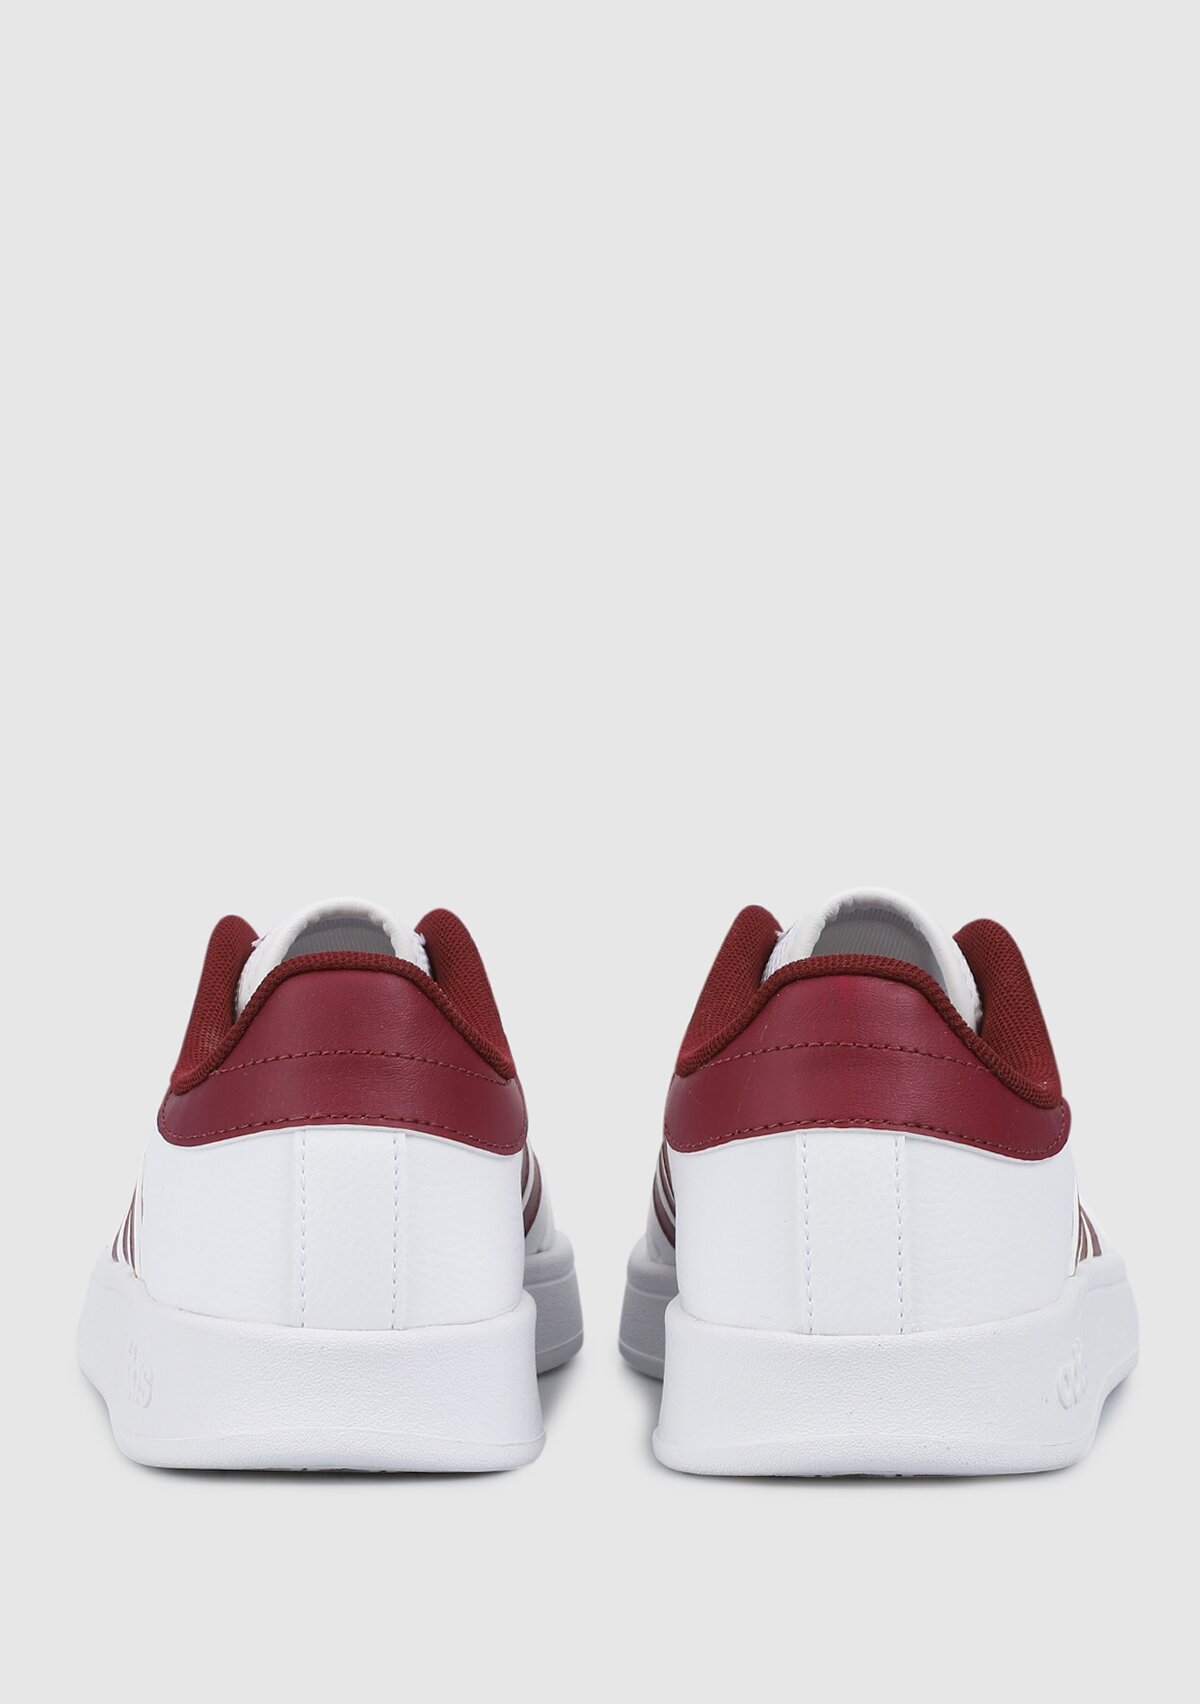 adidas Breaknet Beyaz Erkek Tenis Ayakkabısı H01960 